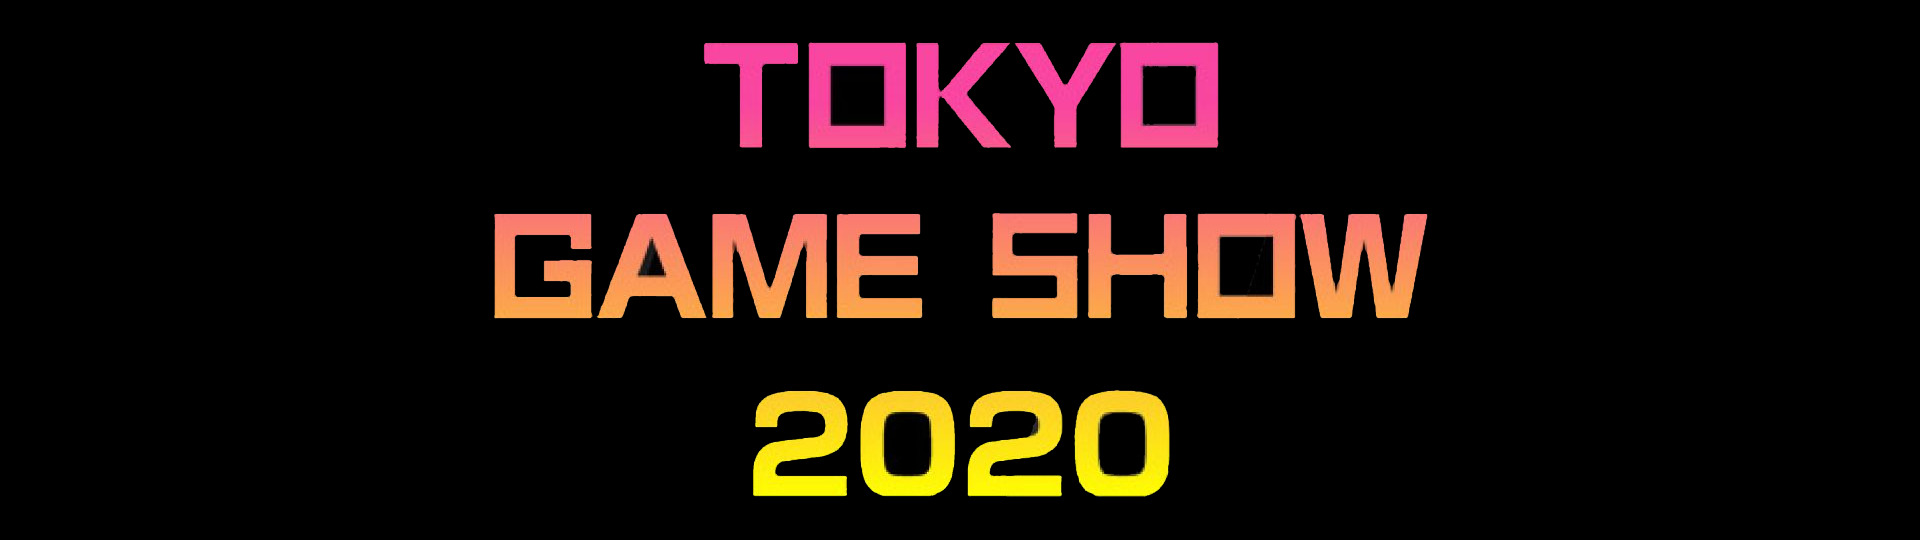 Podrobnosti o Tokyo Game Show Online | Novinky